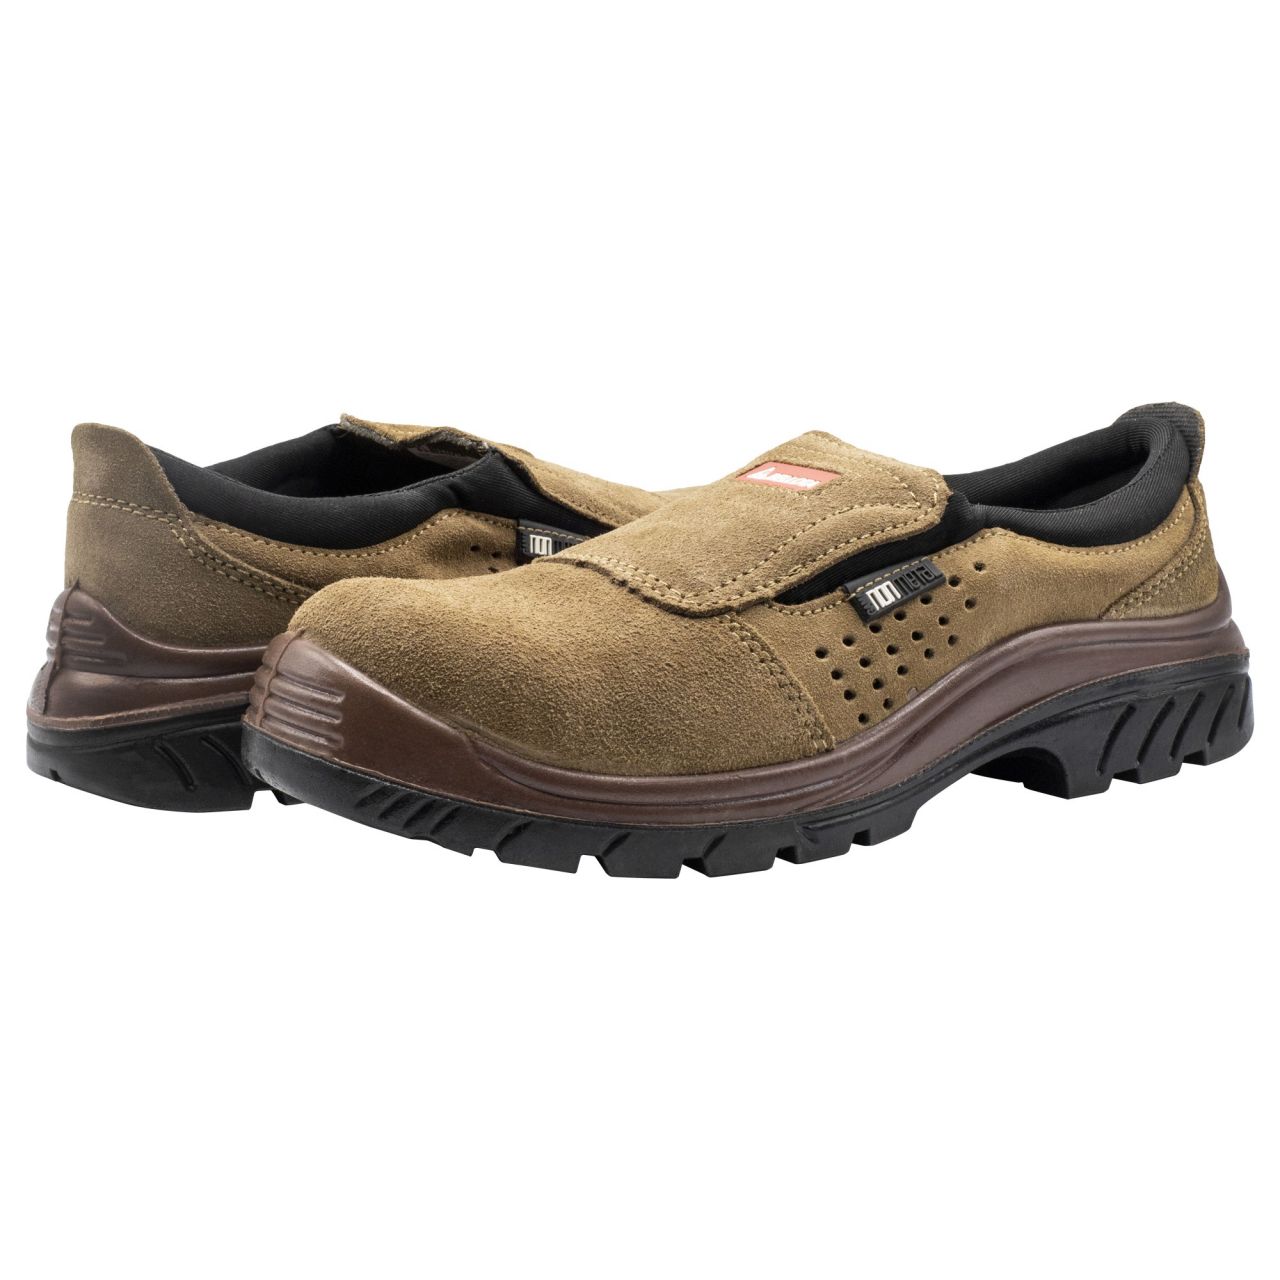 Zapato de seguridad Nonmetal Easy serraje marrón S1P talla 40 / 7222740S1P